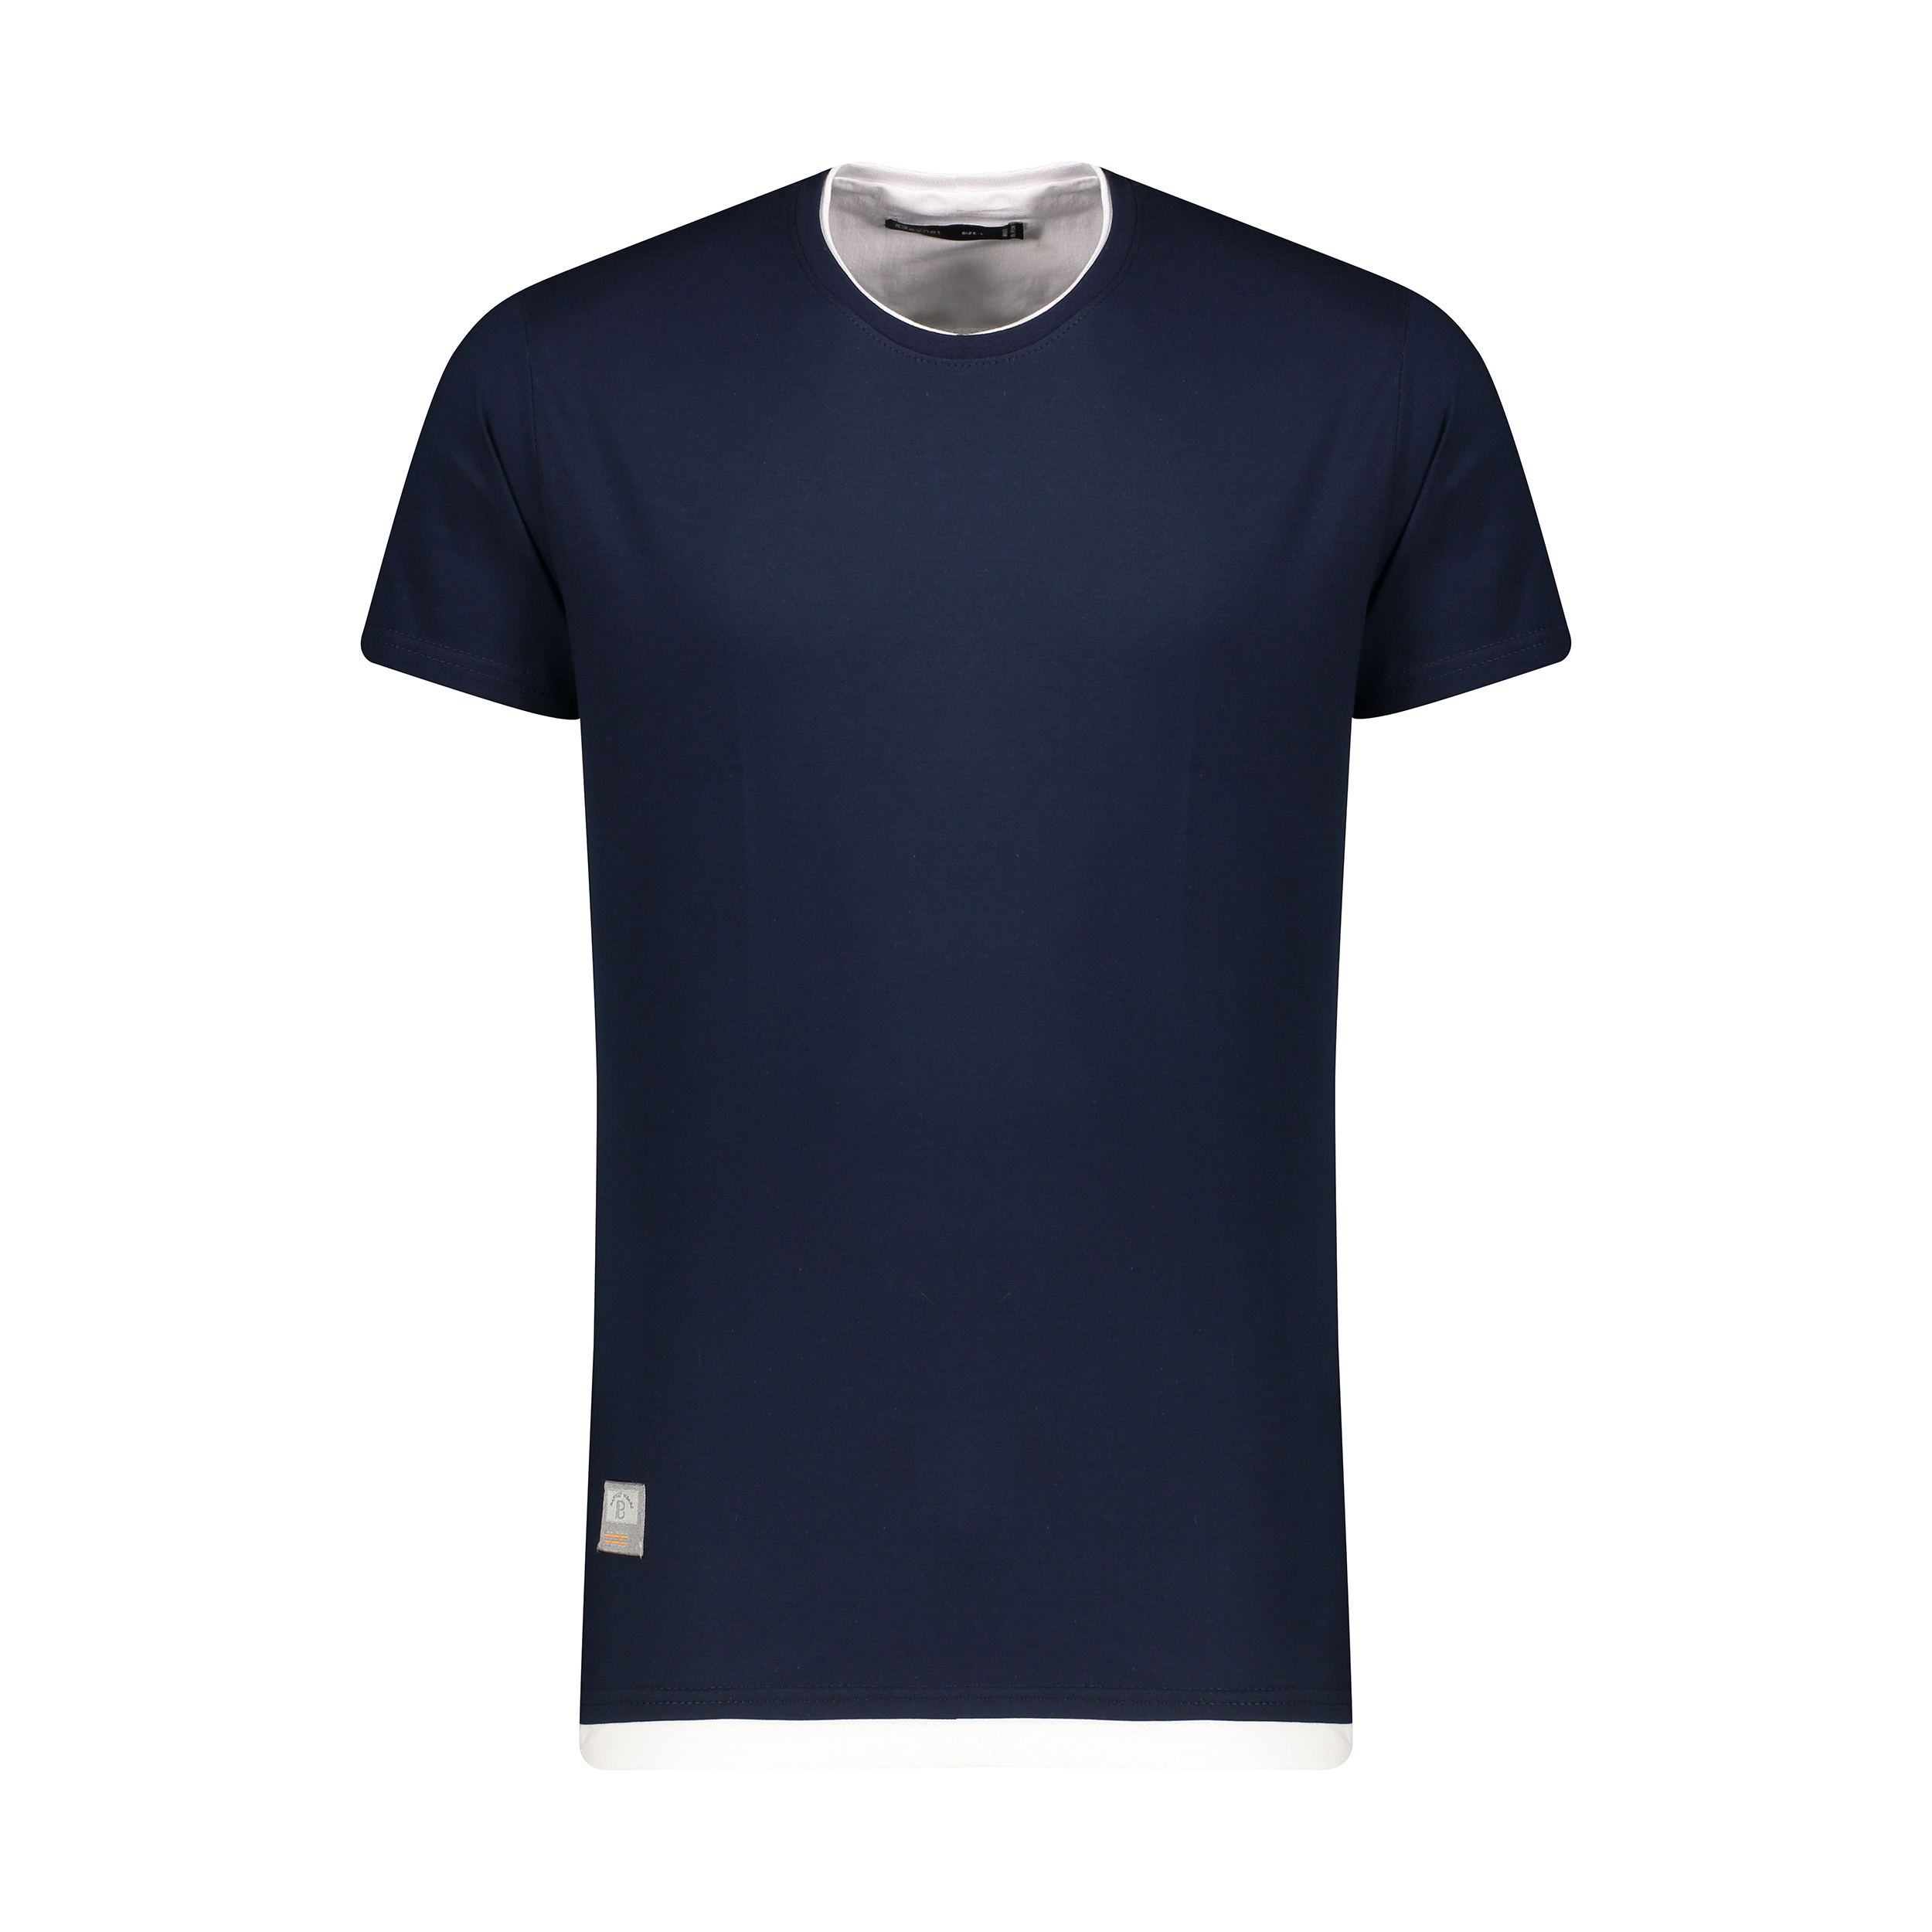 نقد و بررسی تی شرت آستین کوتاه مردانه باینت مدل 2261504-59 توسط خریداران